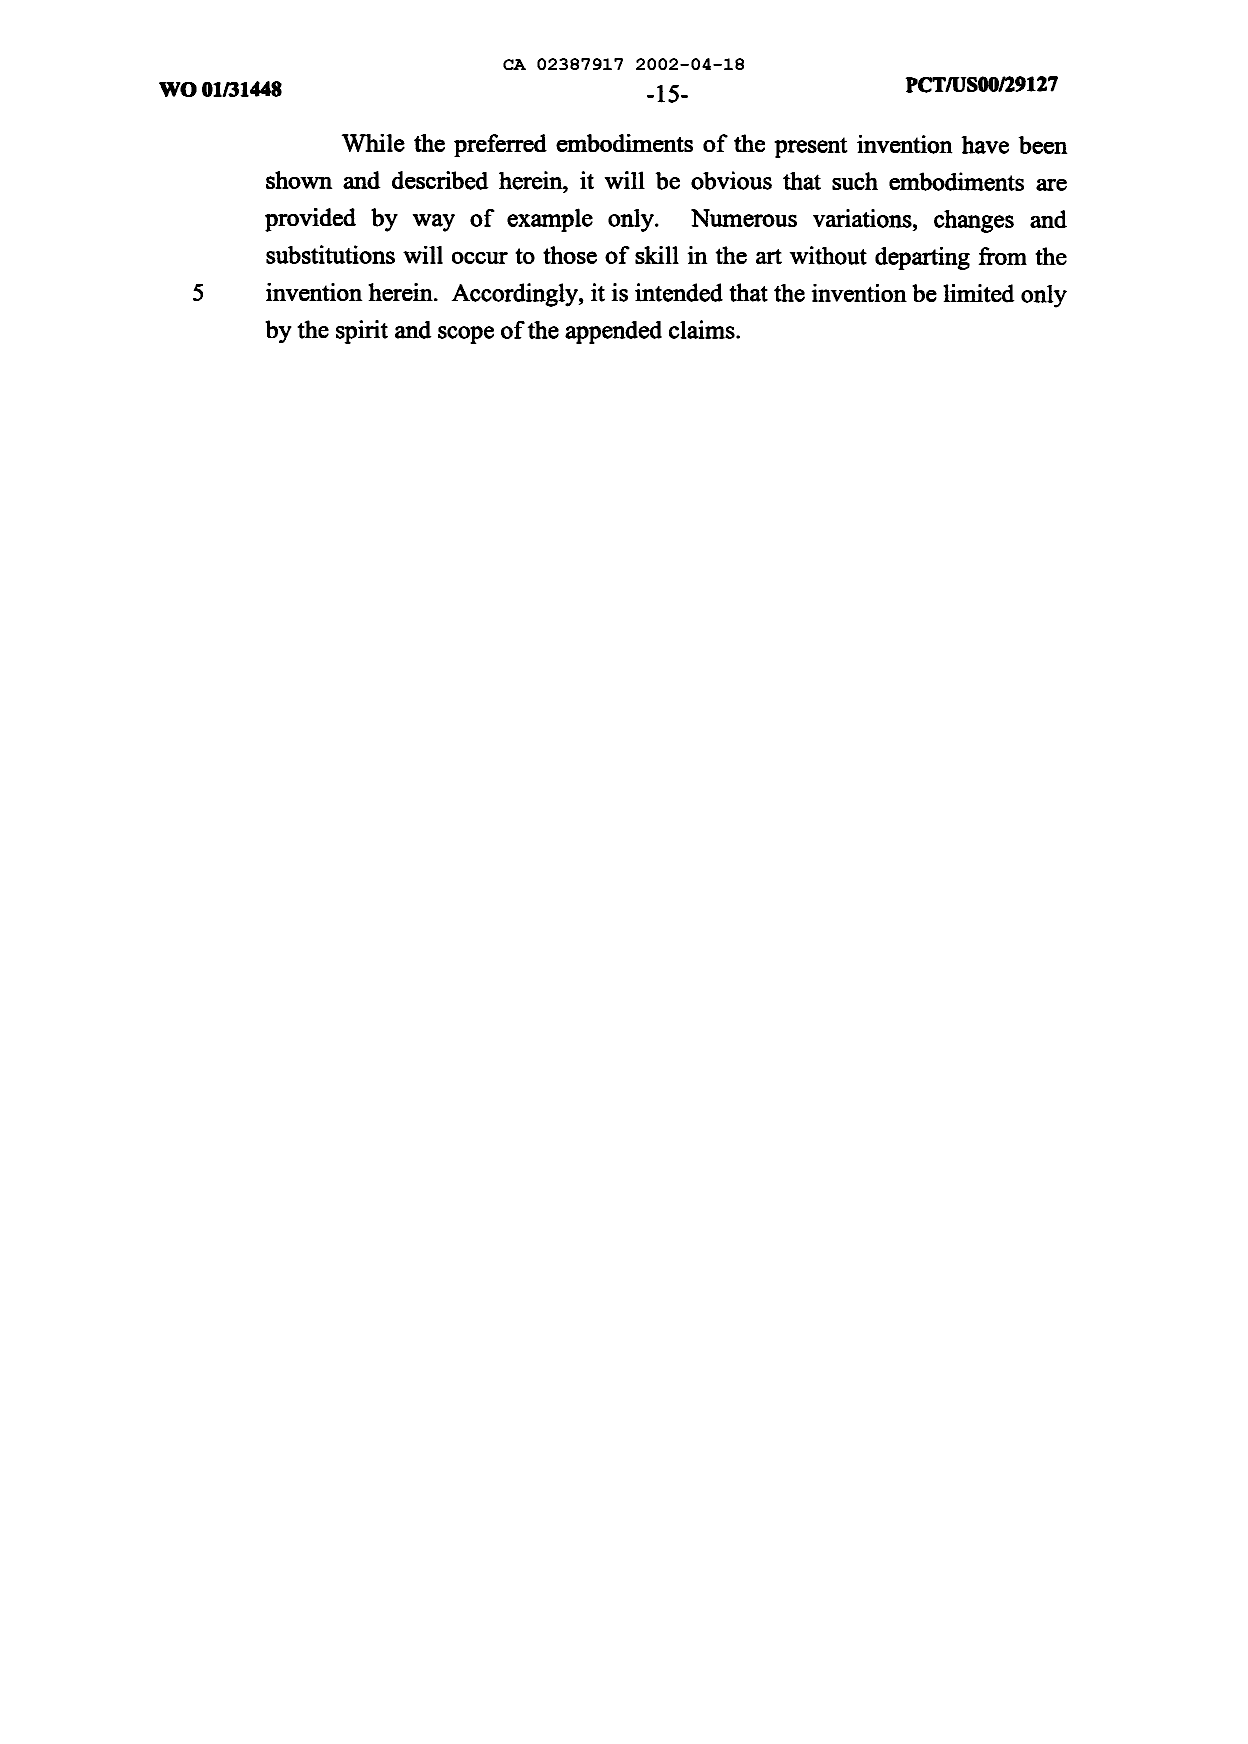 Canadian Patent Document 2387917. Description 20020418. Image 15 of 15